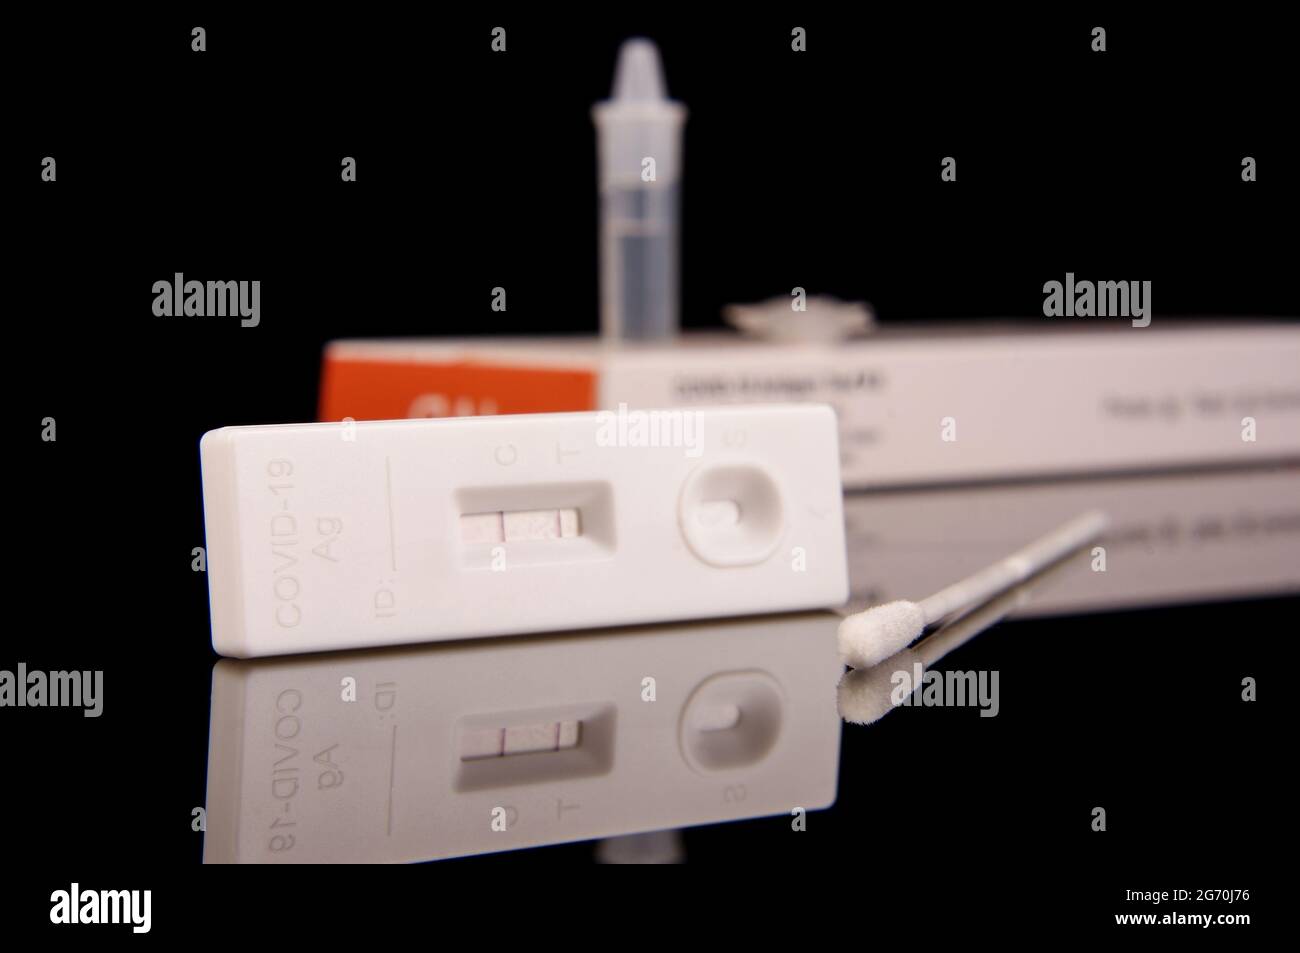 Kit de prueba de antígeno rápido para detección de virus de corona COVID-19 y control de pandemia aislado sobre fondo negro reflectante Foto de stock